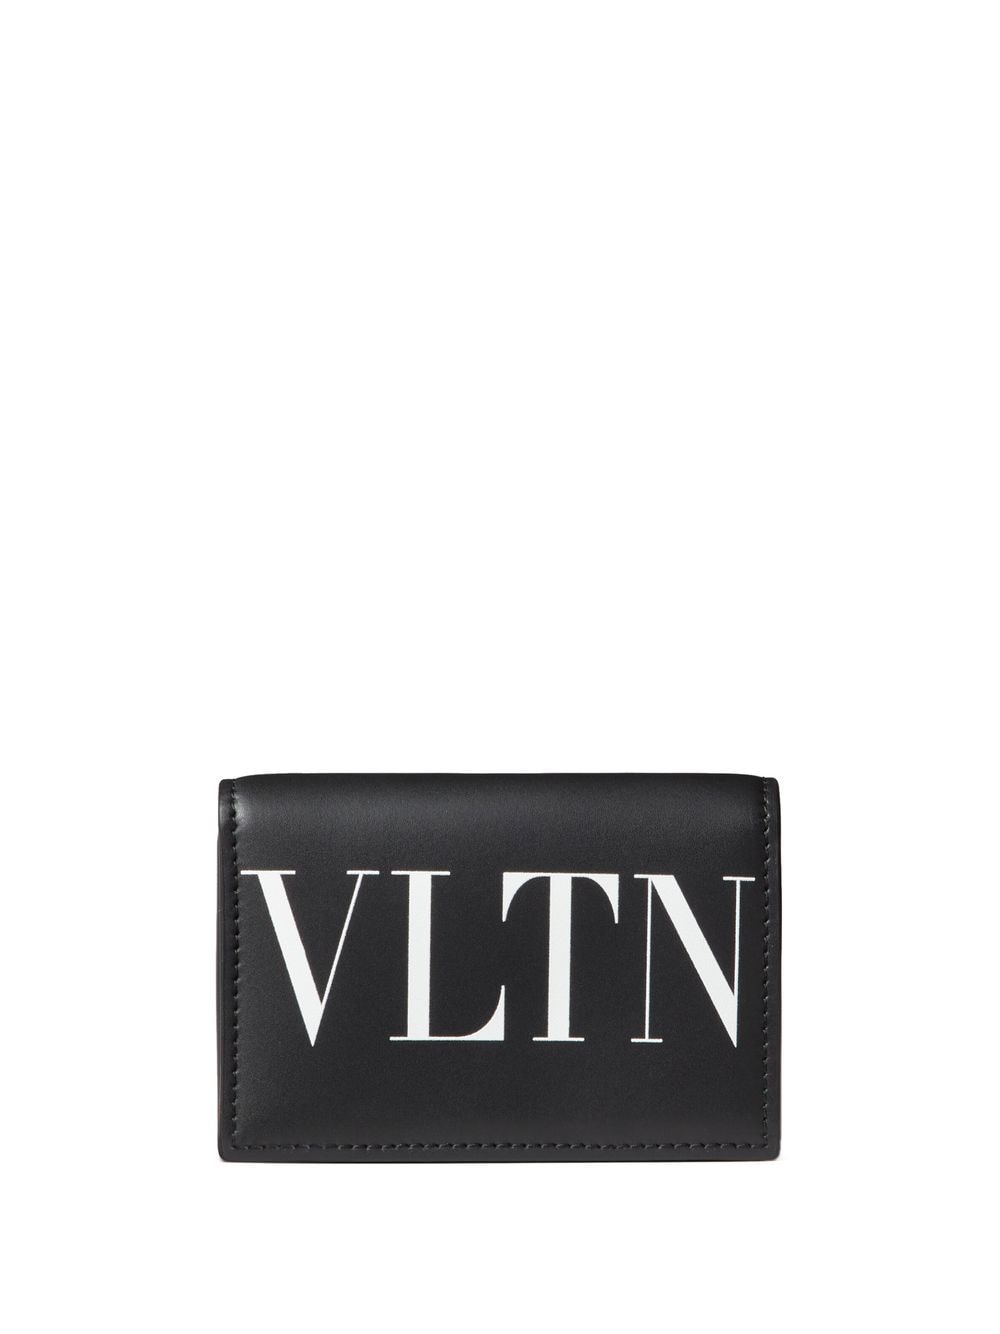 Valentino Garavani VLTN leather wallet - Black von Valentino Garavani